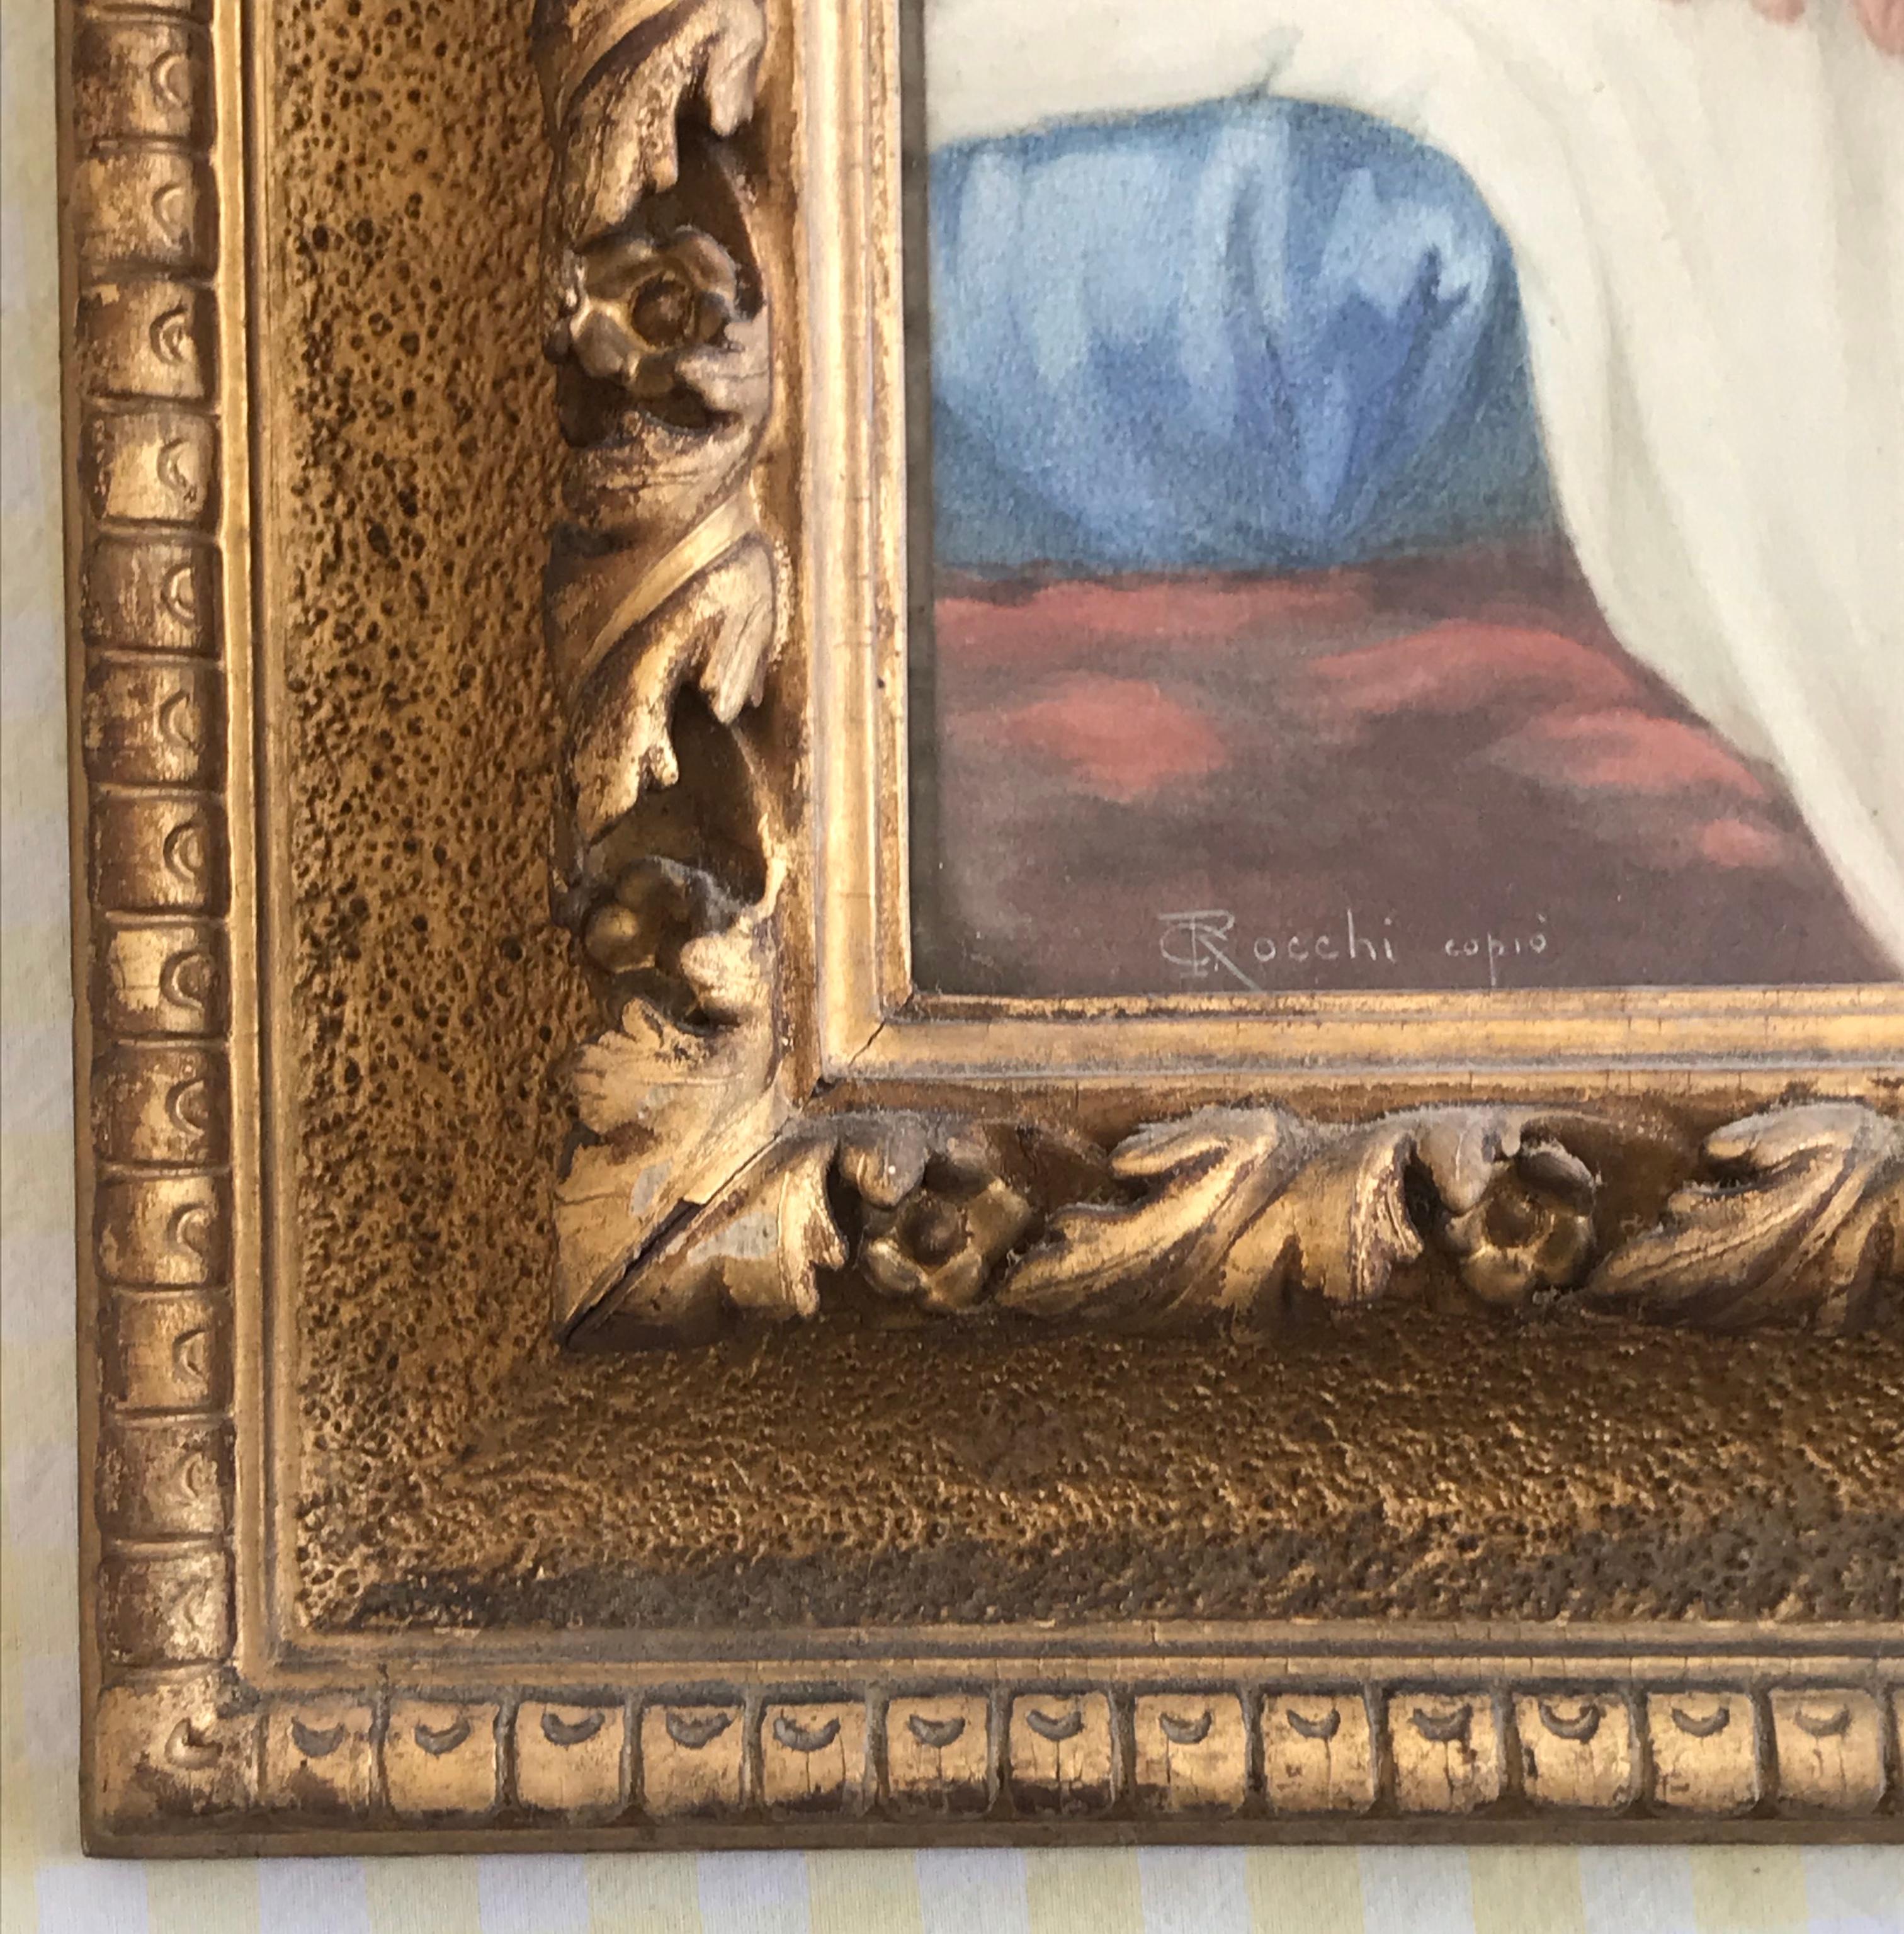 Une belle copie du XIXe siècle par Giuseppe Rocchi du Cupidon endormi de Baldassarre Franceschini, présentée dans un très beau cadre doré avec des moulures sculptées à la main. Une image très paisible idéale pour un salon ou une chambre à